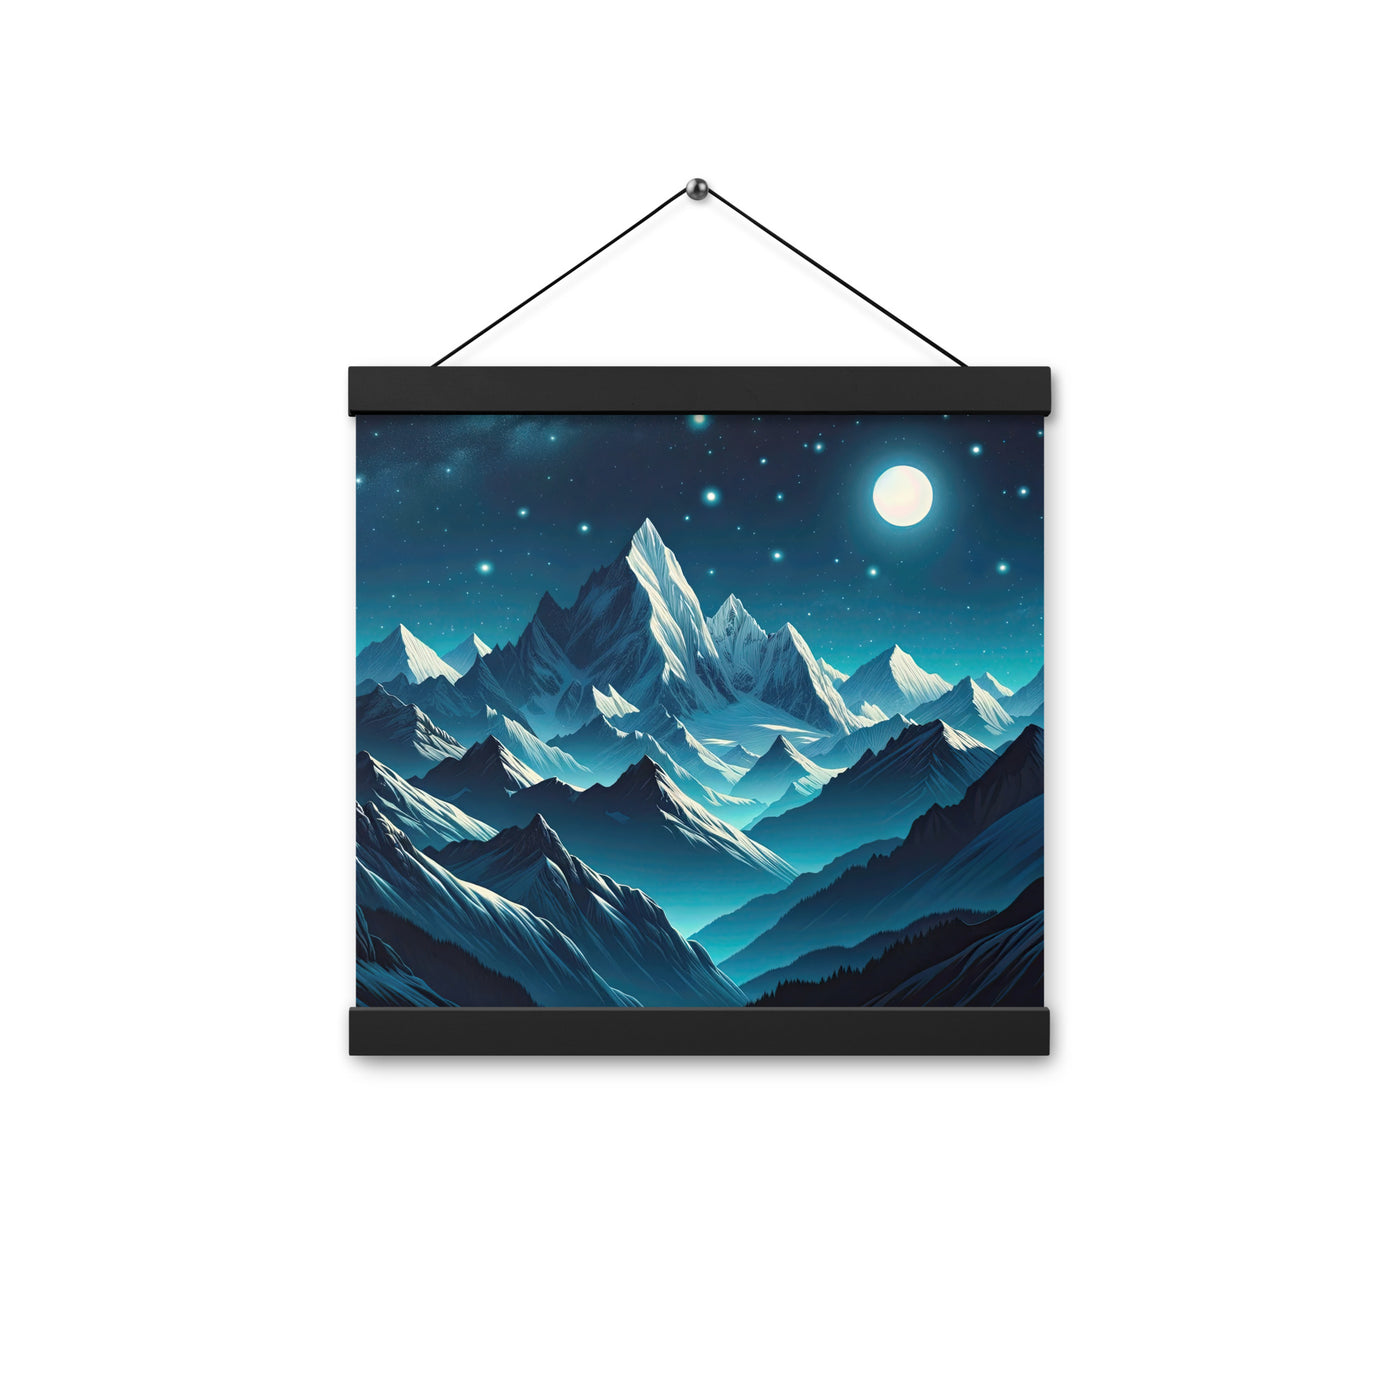 Sternenklare Nacht über den Alpen, Vollmondschein auf Schneegipfeln - Premium Poster mit Aufhängung berge xxx yyy zzz 30.5 x 30.5 cm